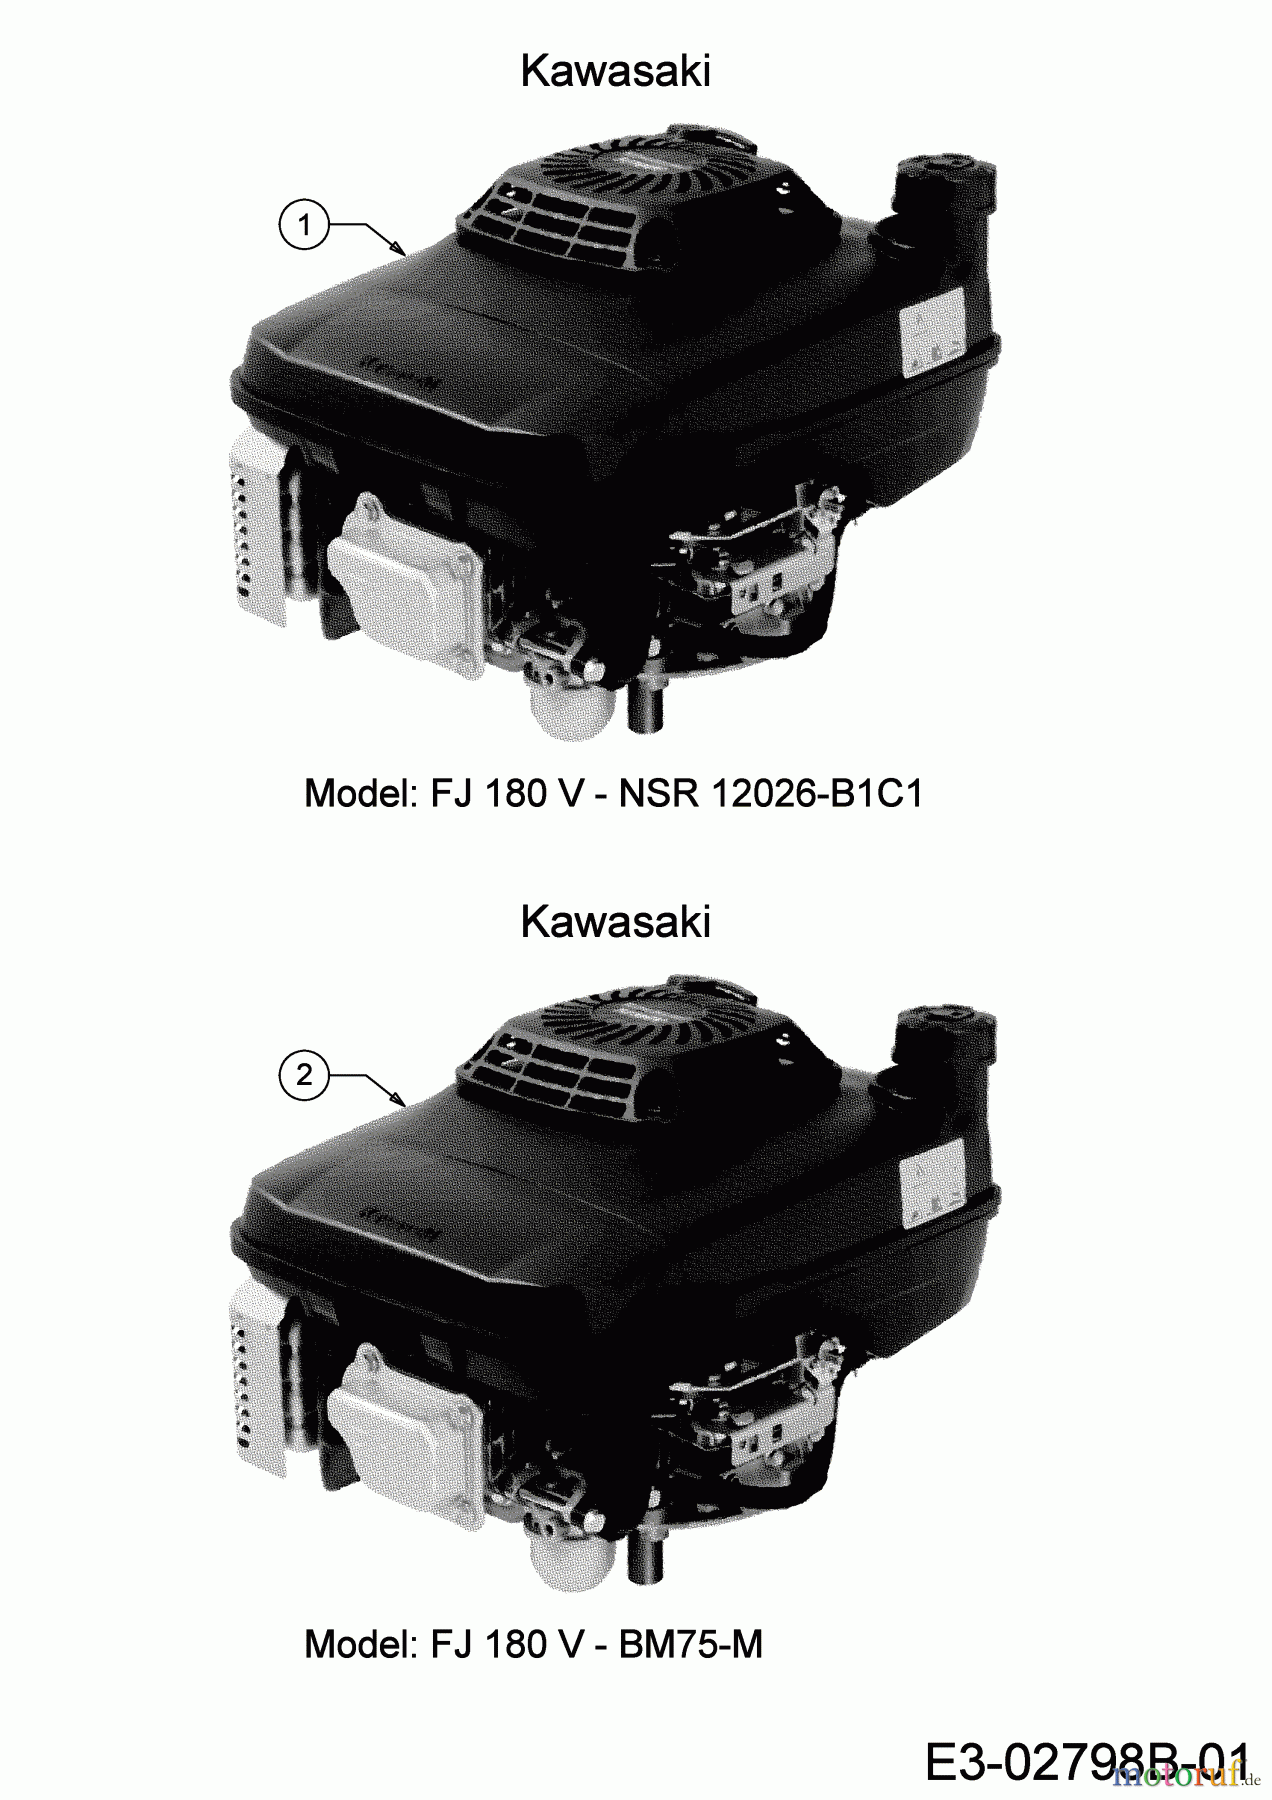  MTD Motormäher mit Antrieb Advance 53 SPKHW 12C-PN7D600 (2020) Motor Kawasaki